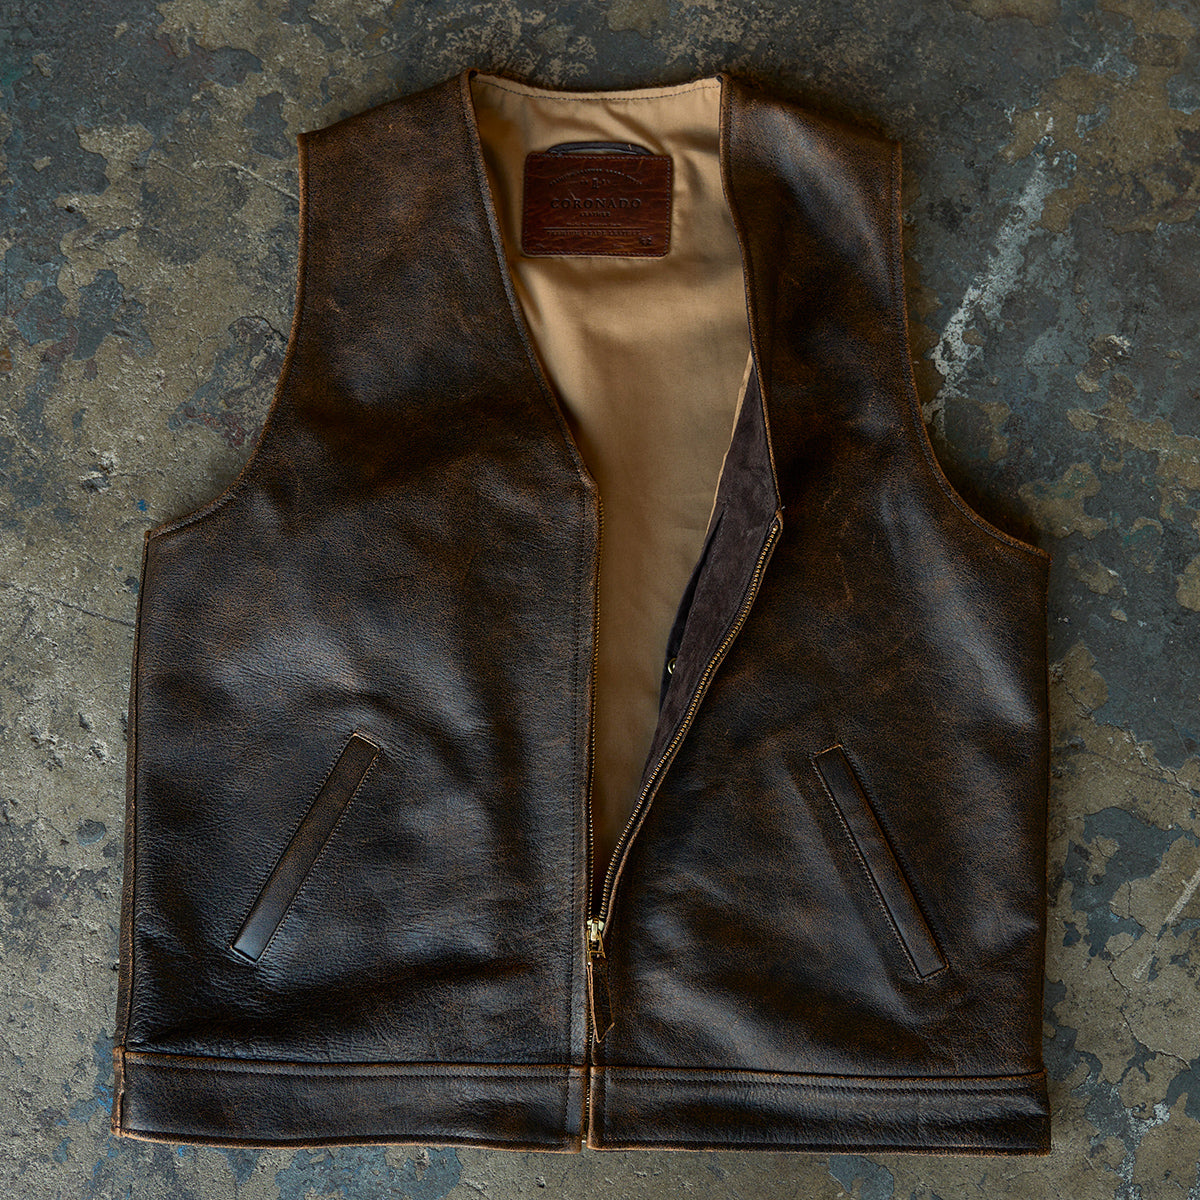 Indiana Vintage Zip Vest No.745